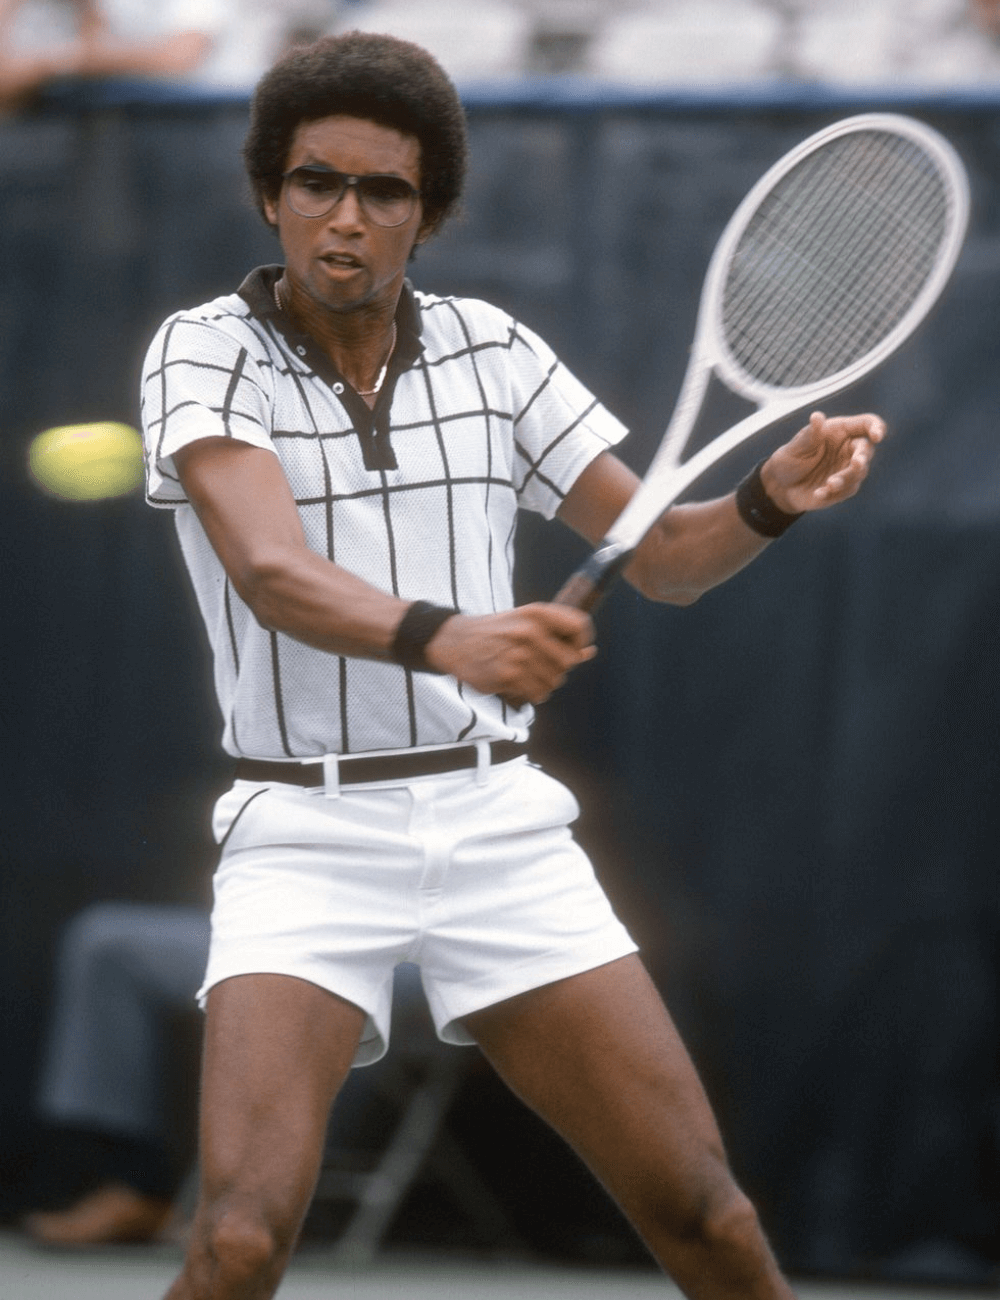 Arthur Ashe - shorts curto, blusa polo, munhequeiras e óculos - moda e tênis - verão - homem negro jogando tênis - https://stealthelook.com.br